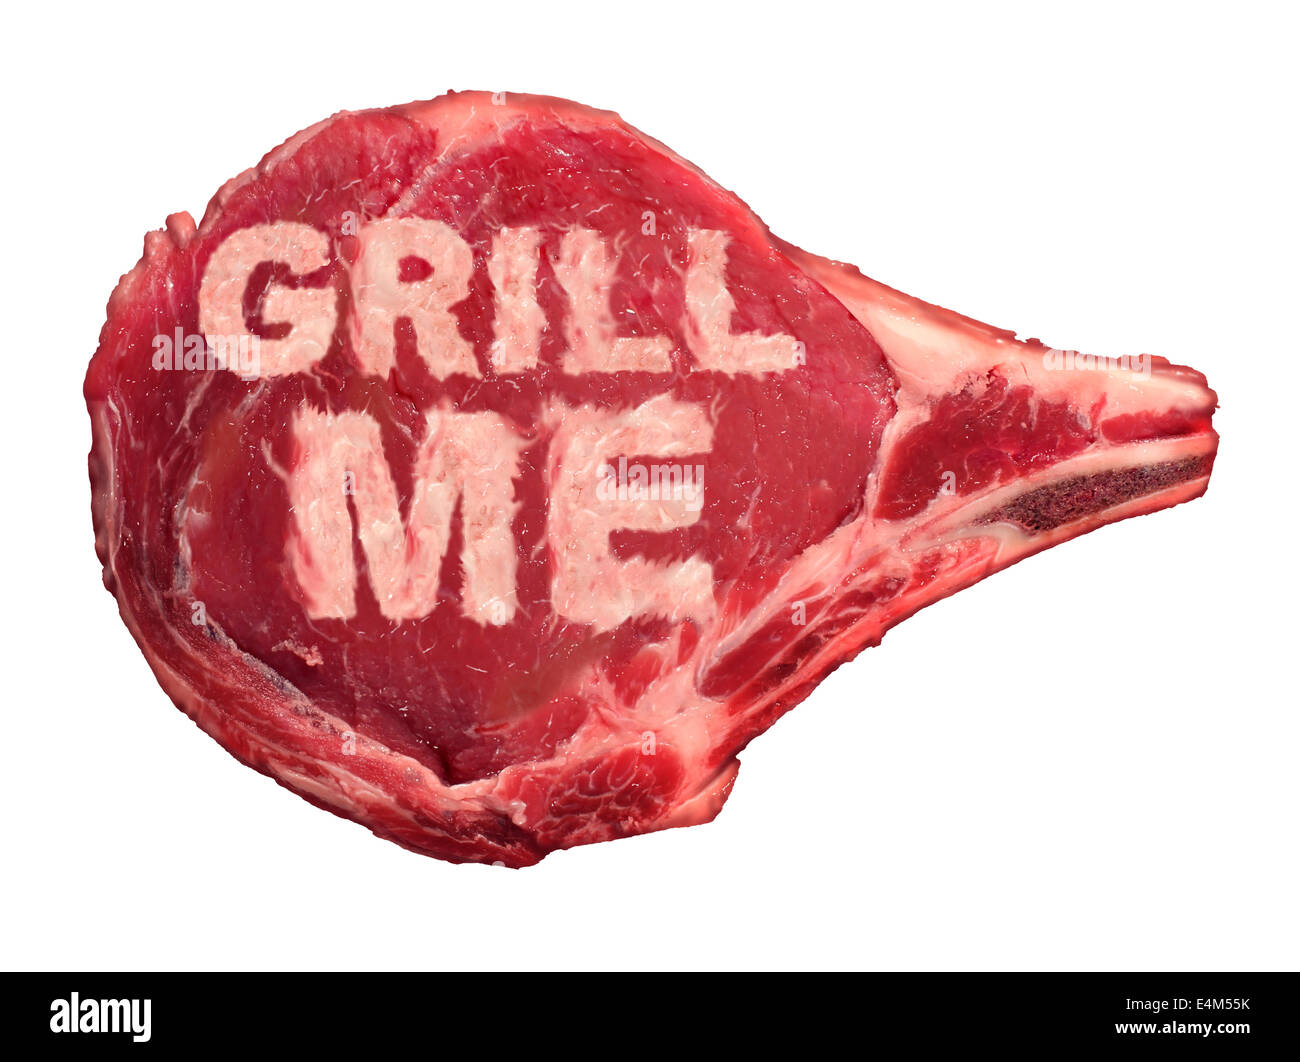 Grillen Fleisch Grill Konzept für BBQ-Zeit als rohe rote Steak isoliert einen weißen Hintergrund, wie Freizeit Aktivität Symbol für kochen Fleisch auf einem heißen Grill für eine Party im Freien oder Sommer Familie zusammenkommen. Stockfoto